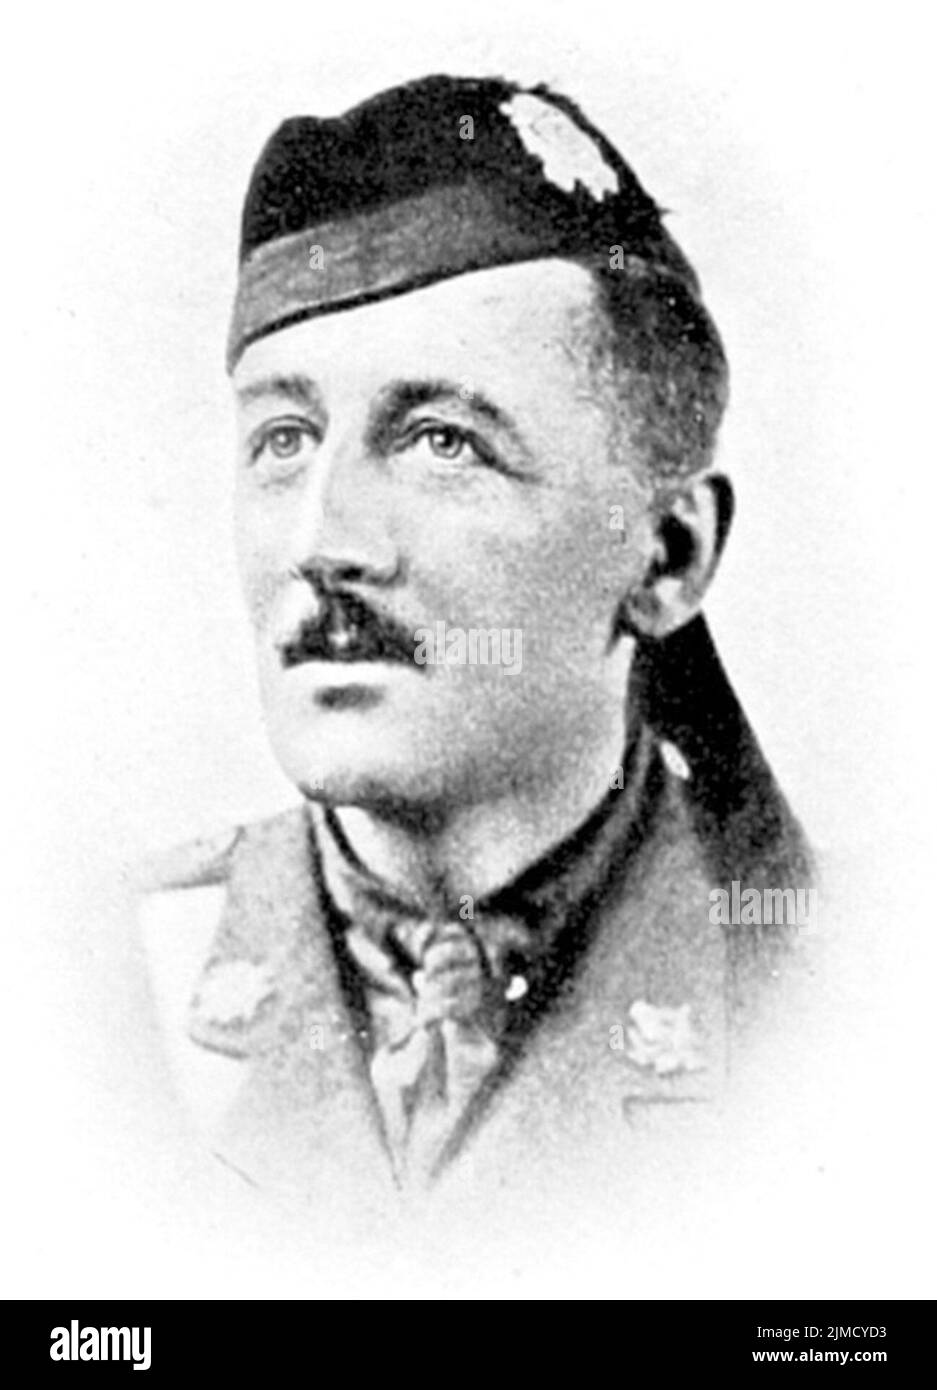 William Herbert Anderson VC, lieutenant-colonel par intérim de l'armée britannique, dans le bataillon 12th (S), l'infanterie légère des Highlands, pendant la première Guerre mondiale, et a reçu le VC pour ses actions le 25 mars 1918 à Bois Favieres, près de Maricourt, en France. Banque D'Images